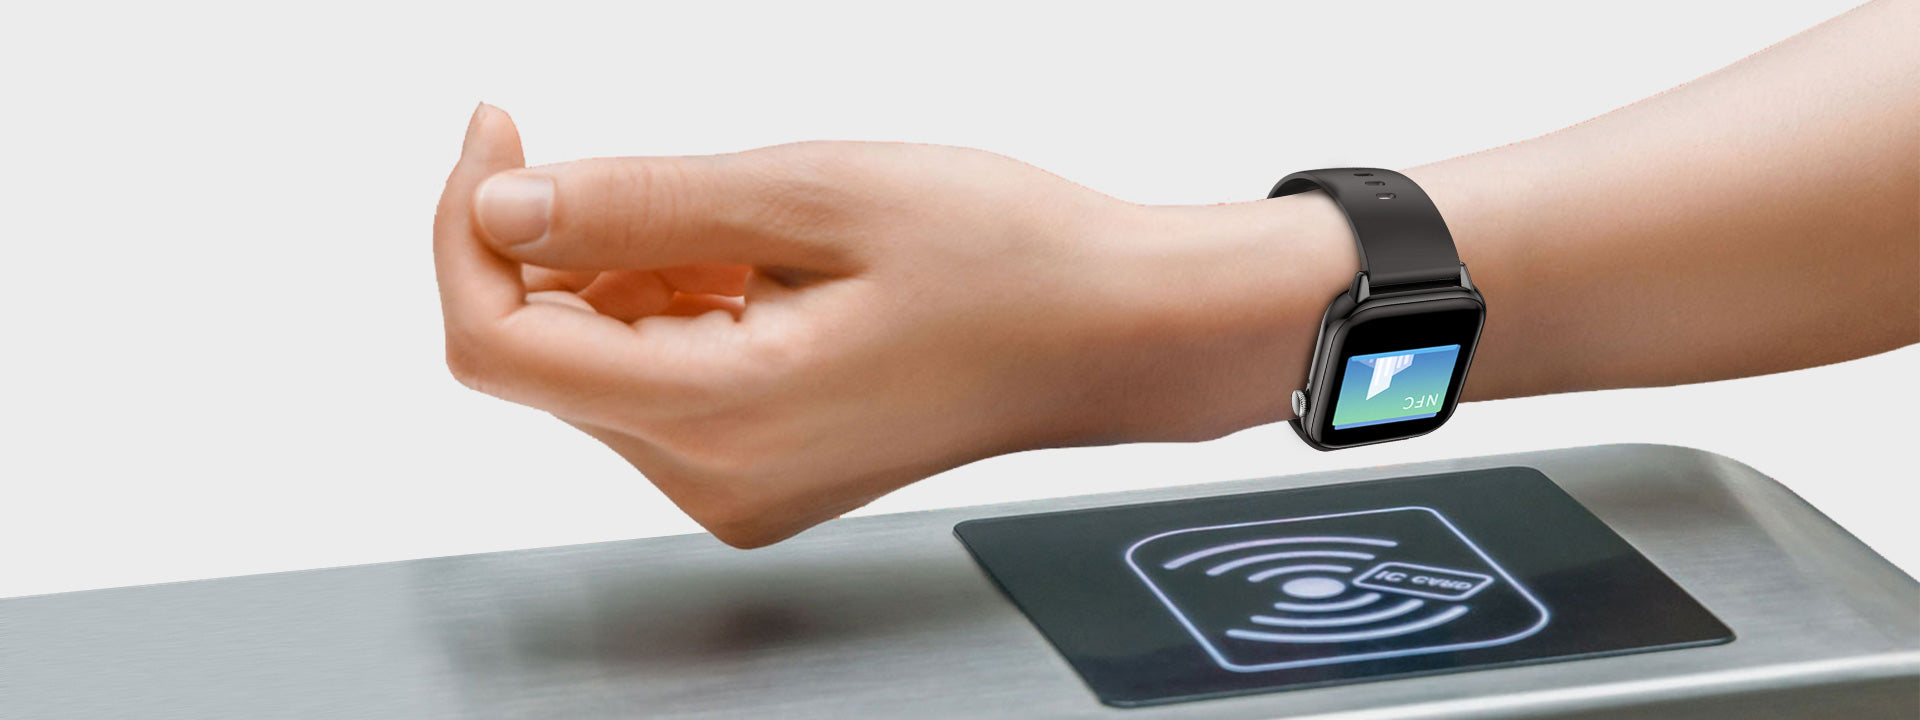 Smart-Watch-C60-NFC-Function-(18)